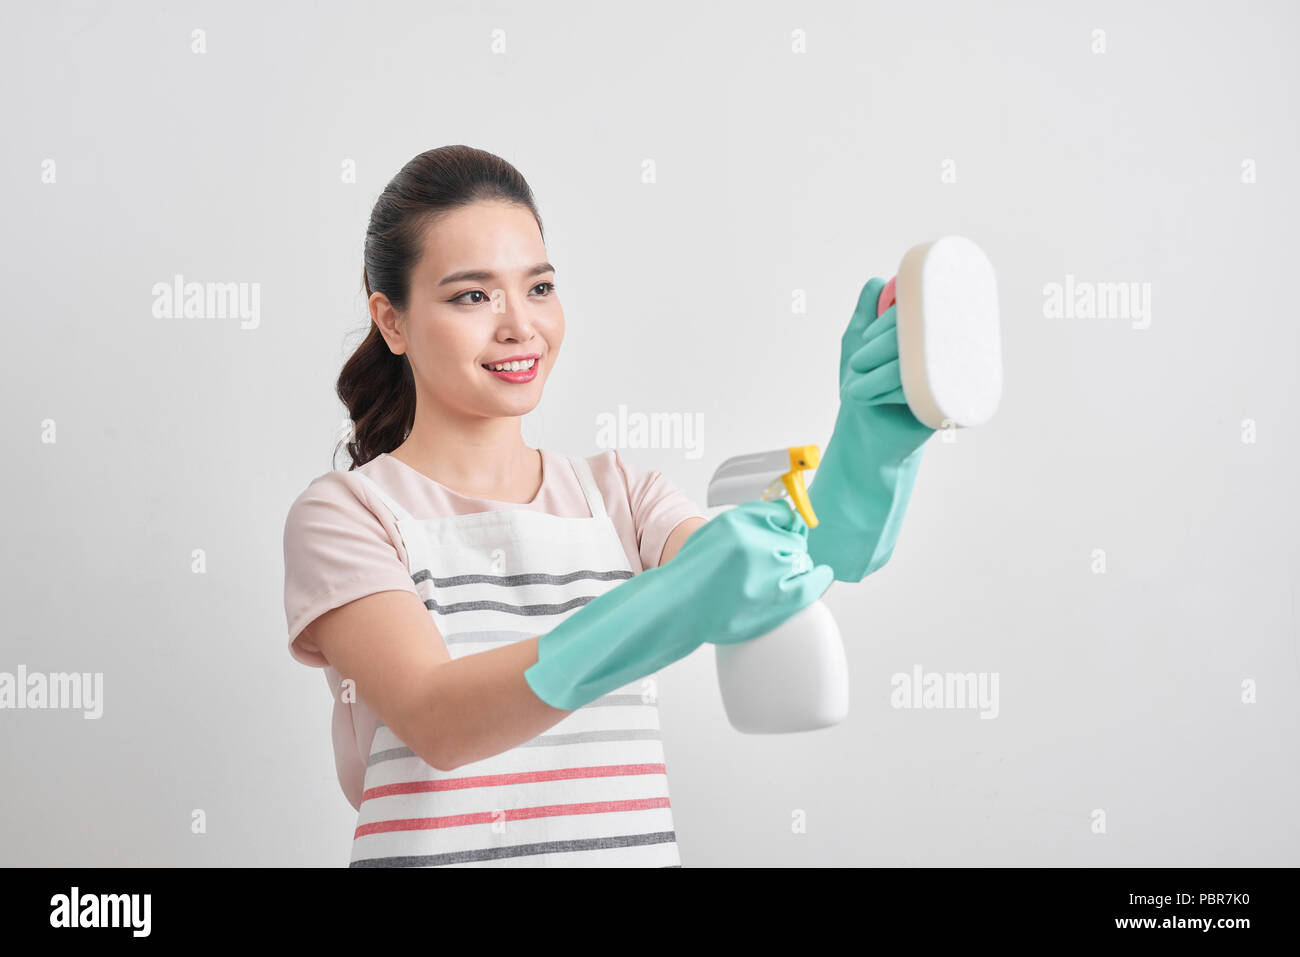 Junge Frau mit Gruppe der Reinigungsmittel. Hausrat, Reinigung, aufräumen, Reinigung Service Konzept Stockfoto